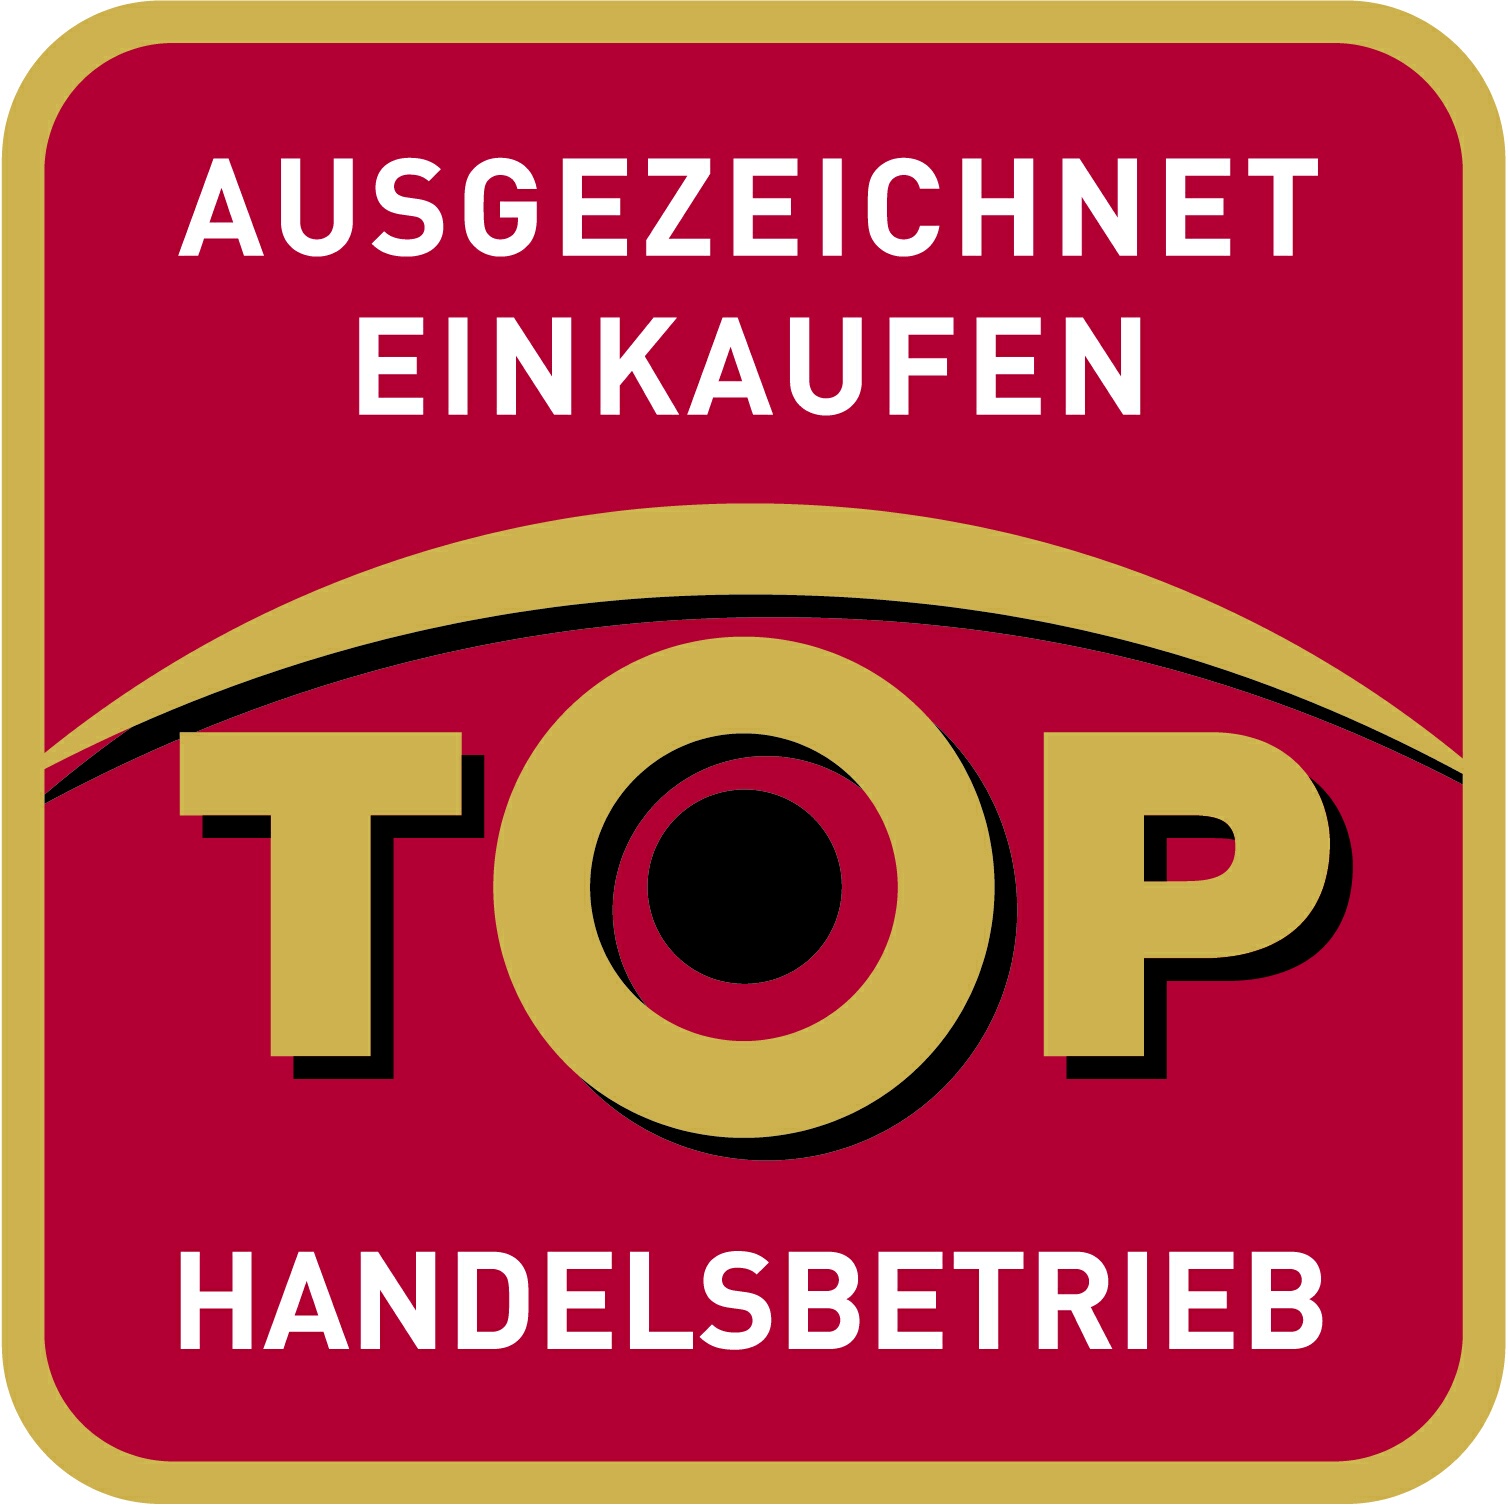 Top Handelsbetrieb Auszeichnung Logo